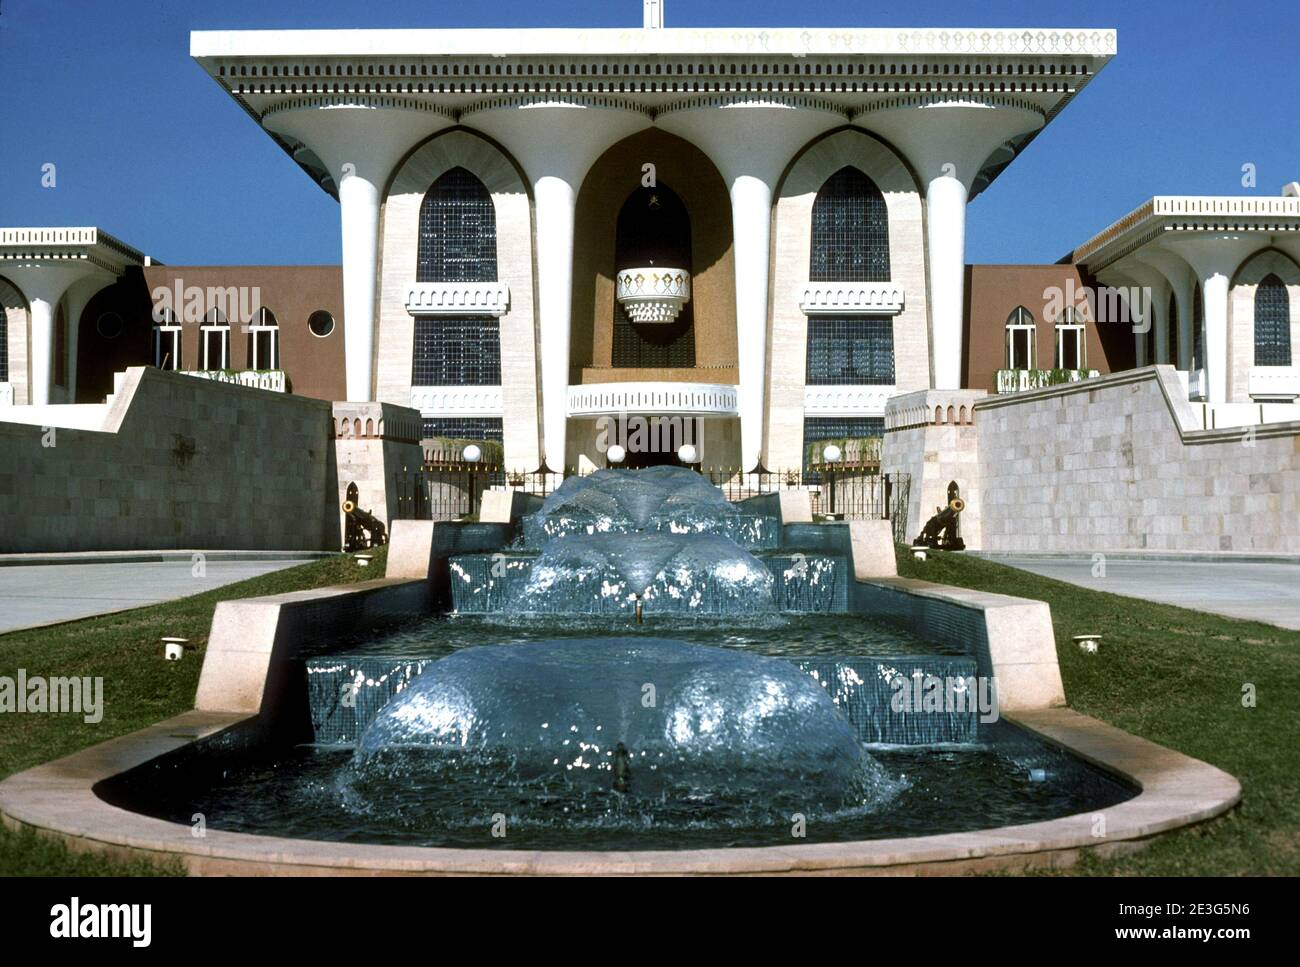 Alam Palace à Muscat, construit en 1972 pour Sultan Qaboos bin Said, Oman Banque D'Images